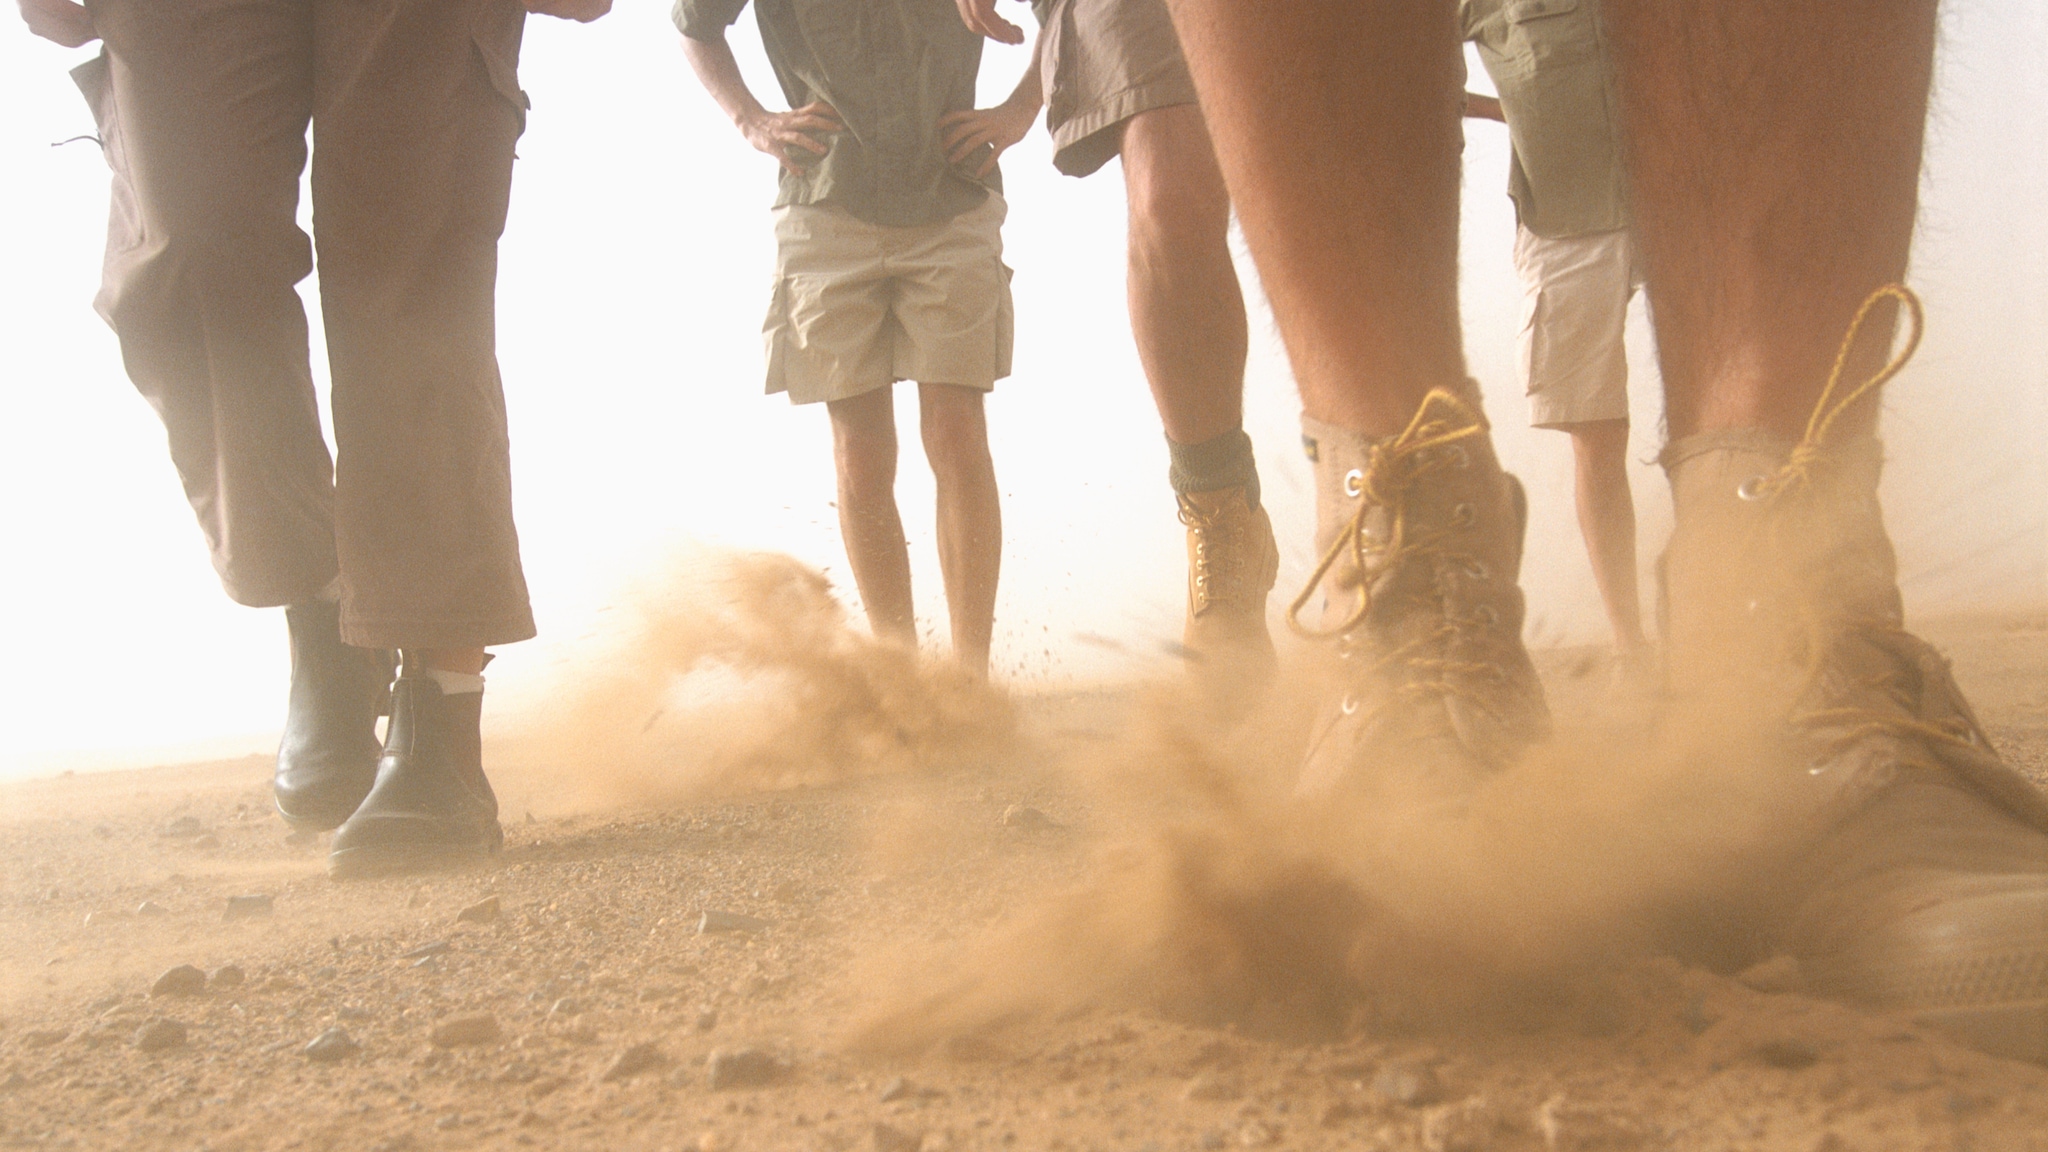 Photo of people's legs walking on dusty soil.